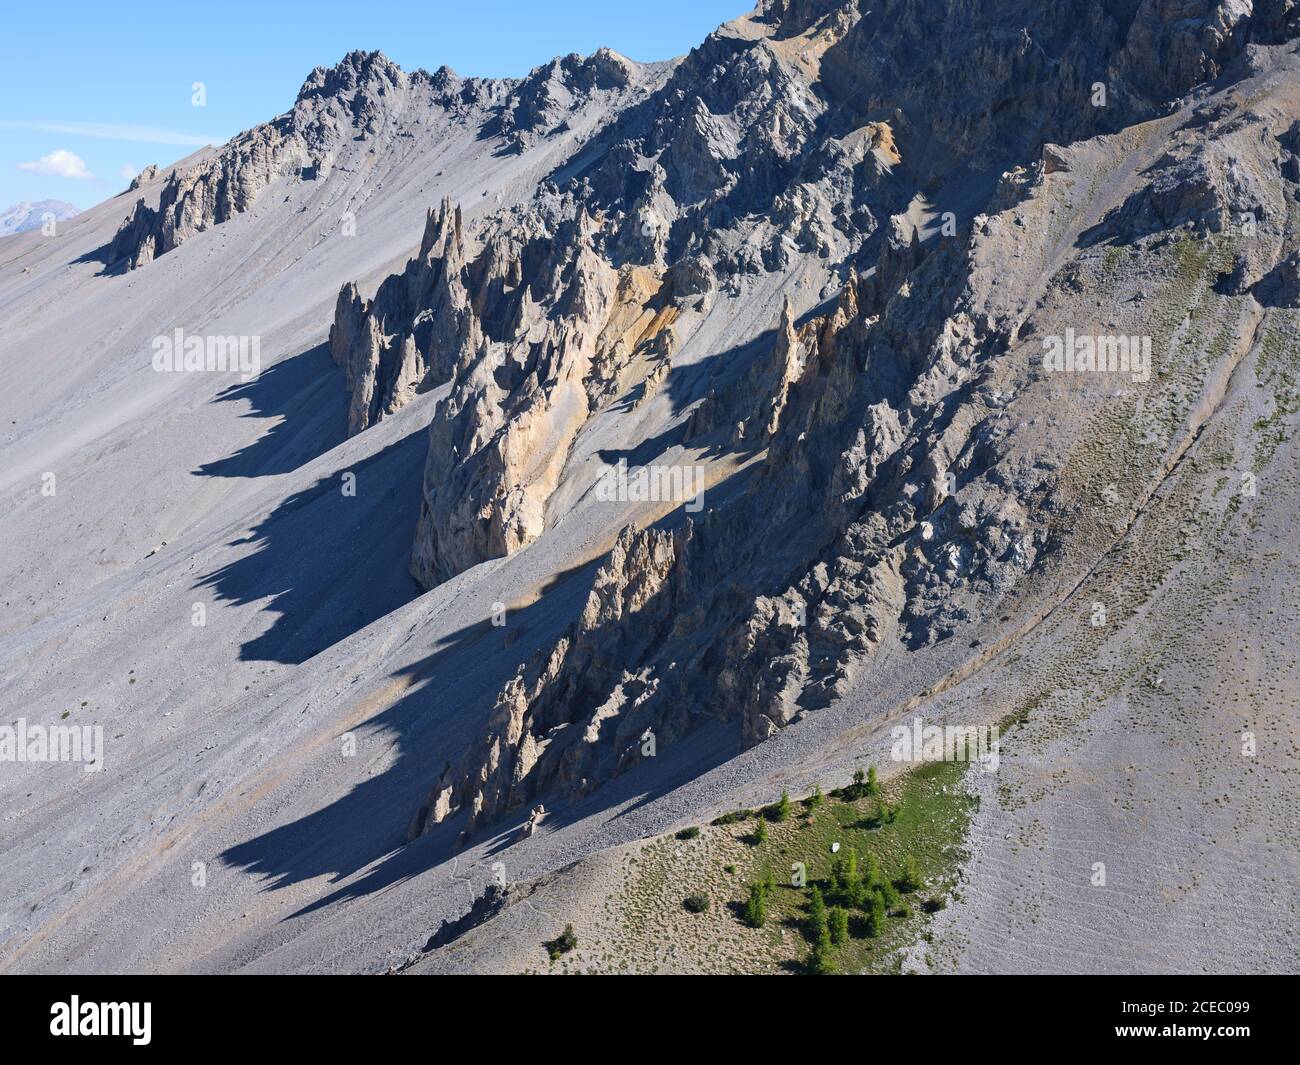 LUFTAUFNAHME. Karge Landschaft von erodierten Zinnen und einem großen Hang von Geröll. La Casse Déserte, Col Izoard, Arvieux, Hautes-Alpes, Frankreich. Stockfoto